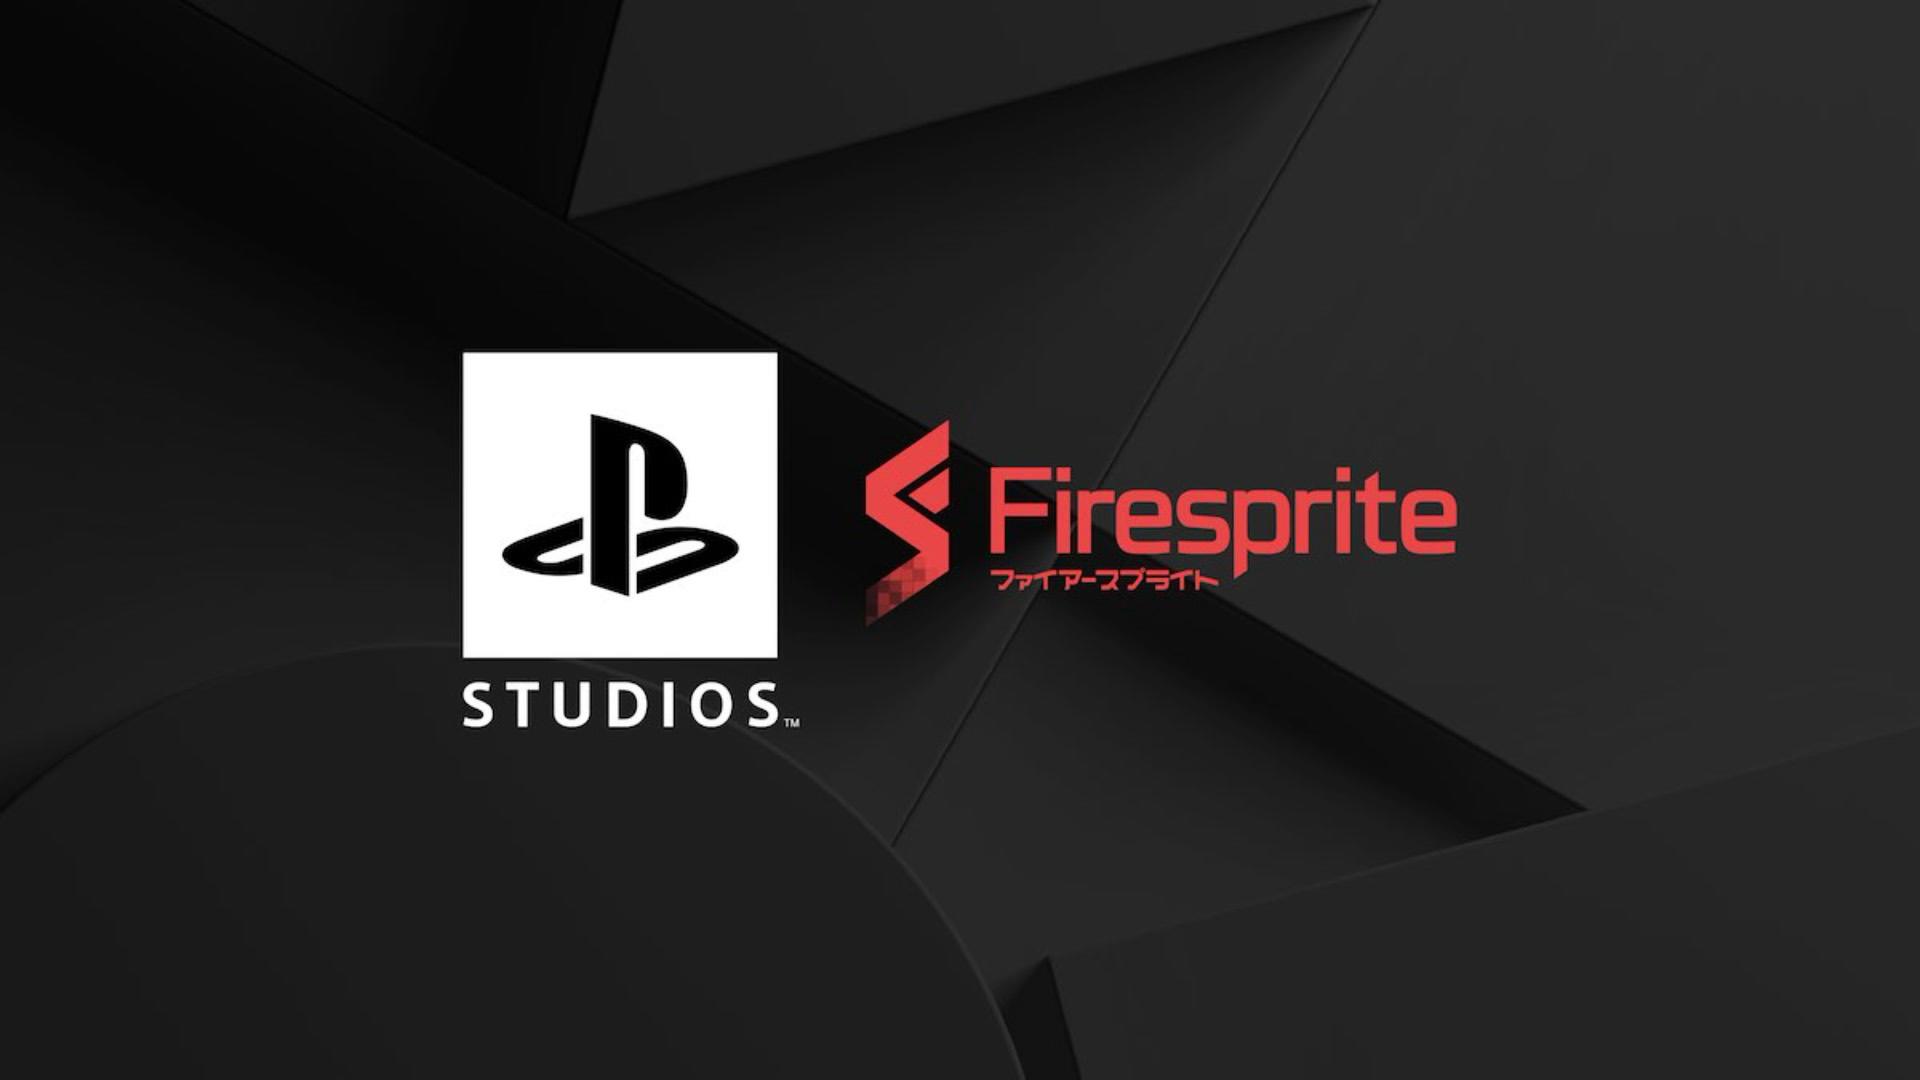 چرا سونی استودیو Firesprite را به خانواده پلی استیشن اضافه کرد؟